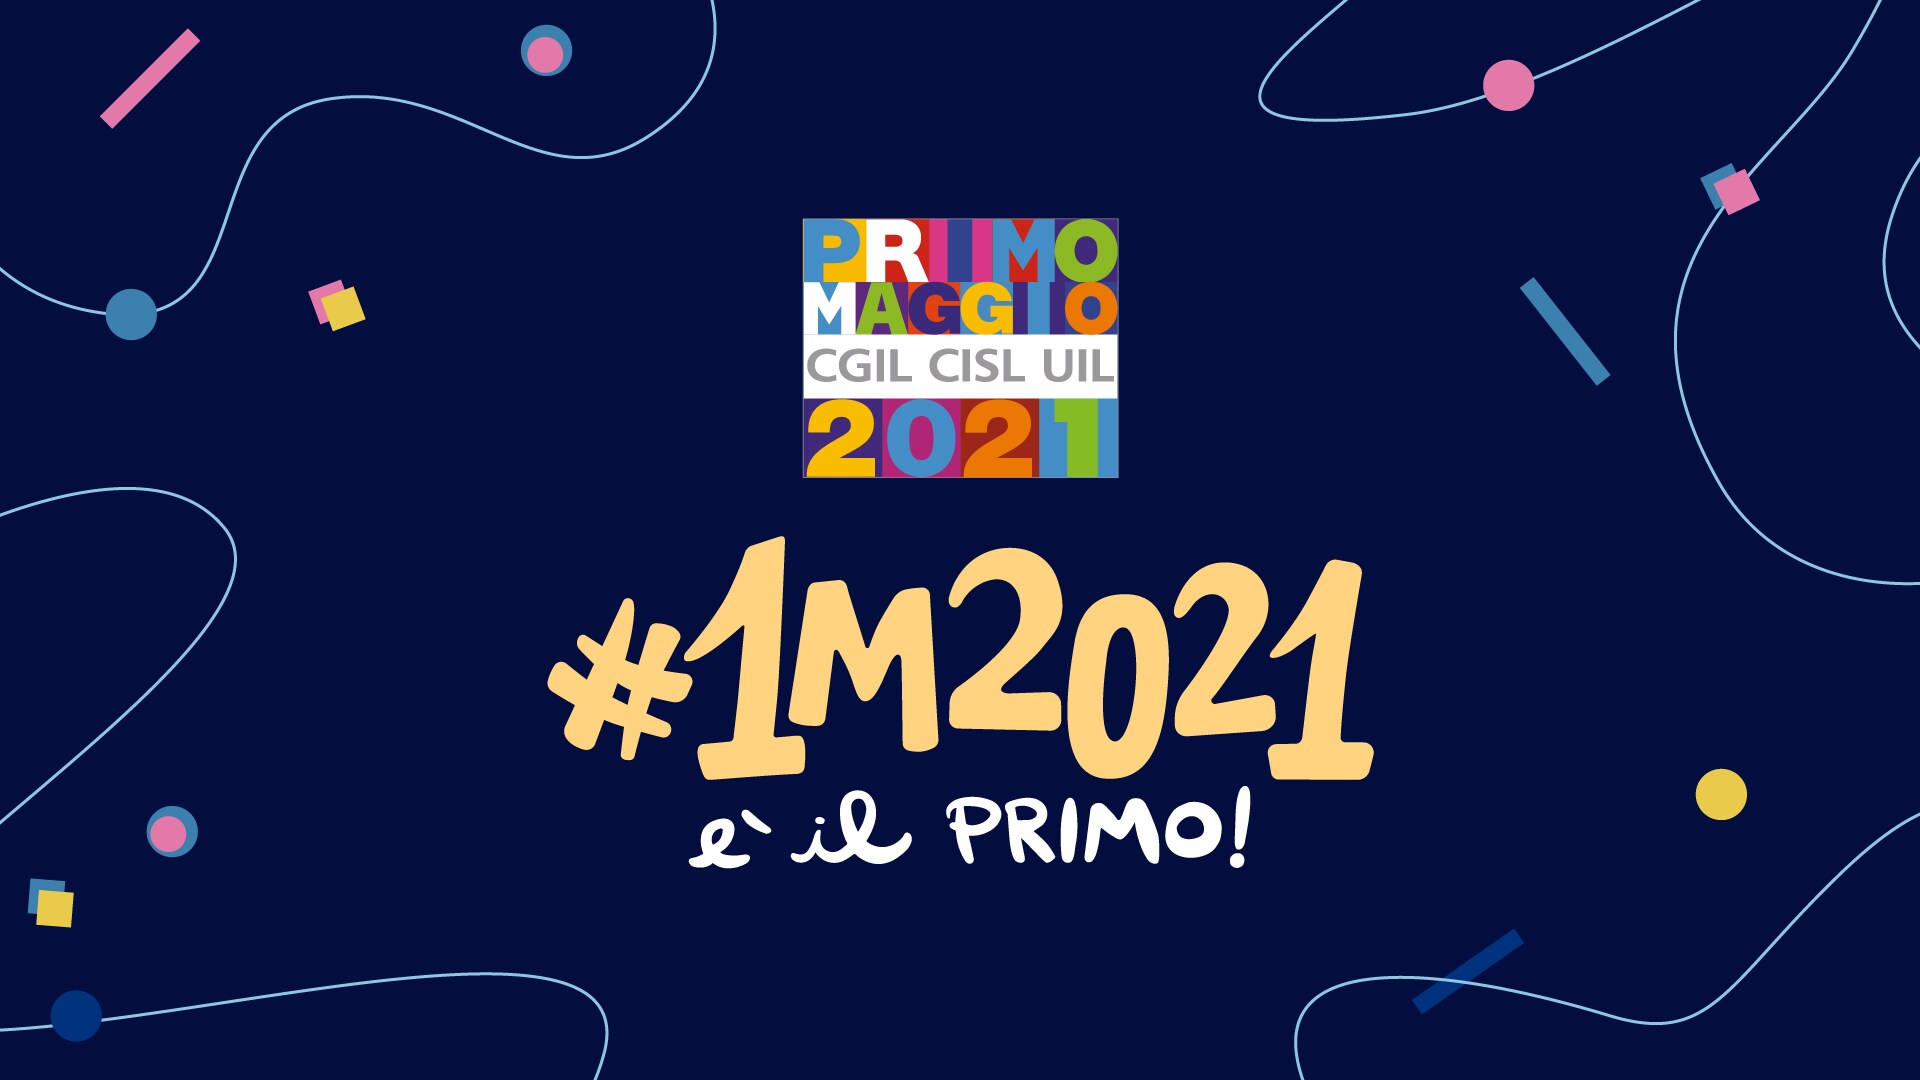 Logo multicolore del "PRIMO MAGGIO 2021 CGIL CISL UIL" su fondo blu scuro circondato da elementi grafici colorati: linee ondulate, cerchi, rettangoli e quadrati. Al centro la scritta "#1M2021 è il primo".